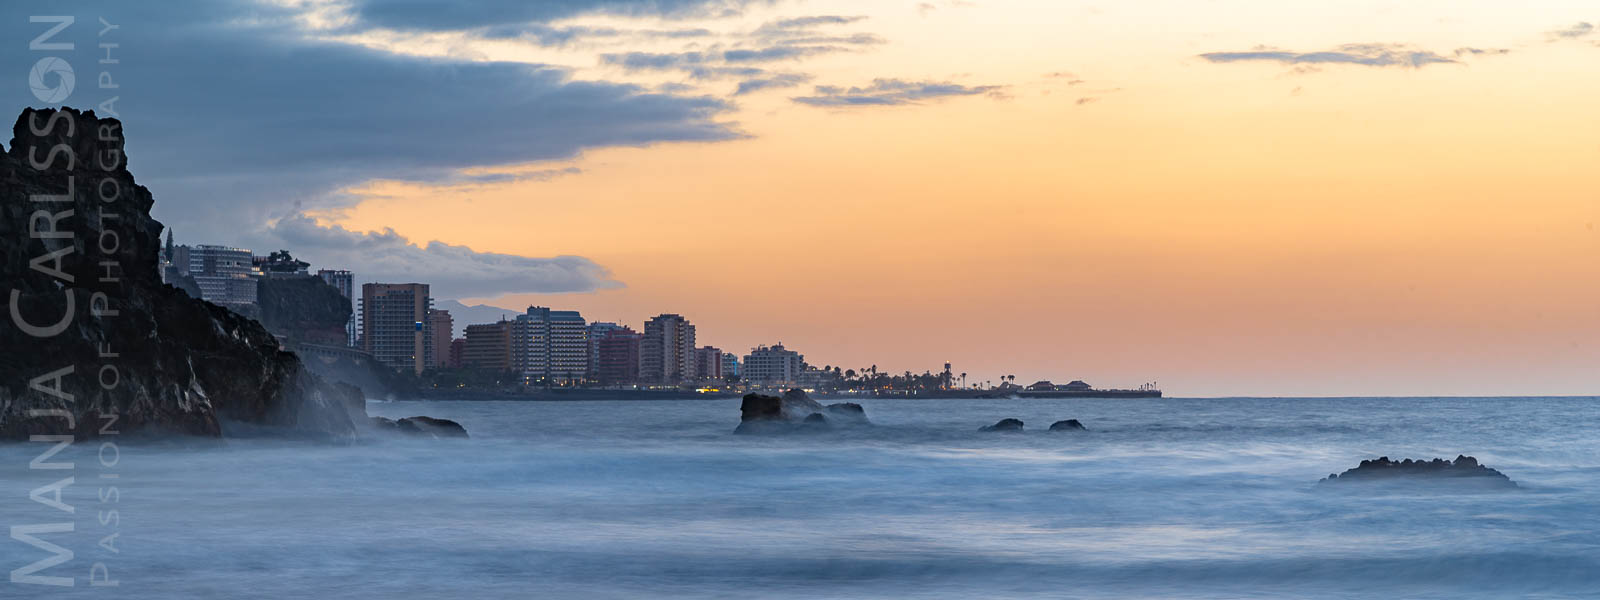 Wellen in Langzeit im abendlichen Sonnenlicht mit Blick auf Puerto de la Cruz